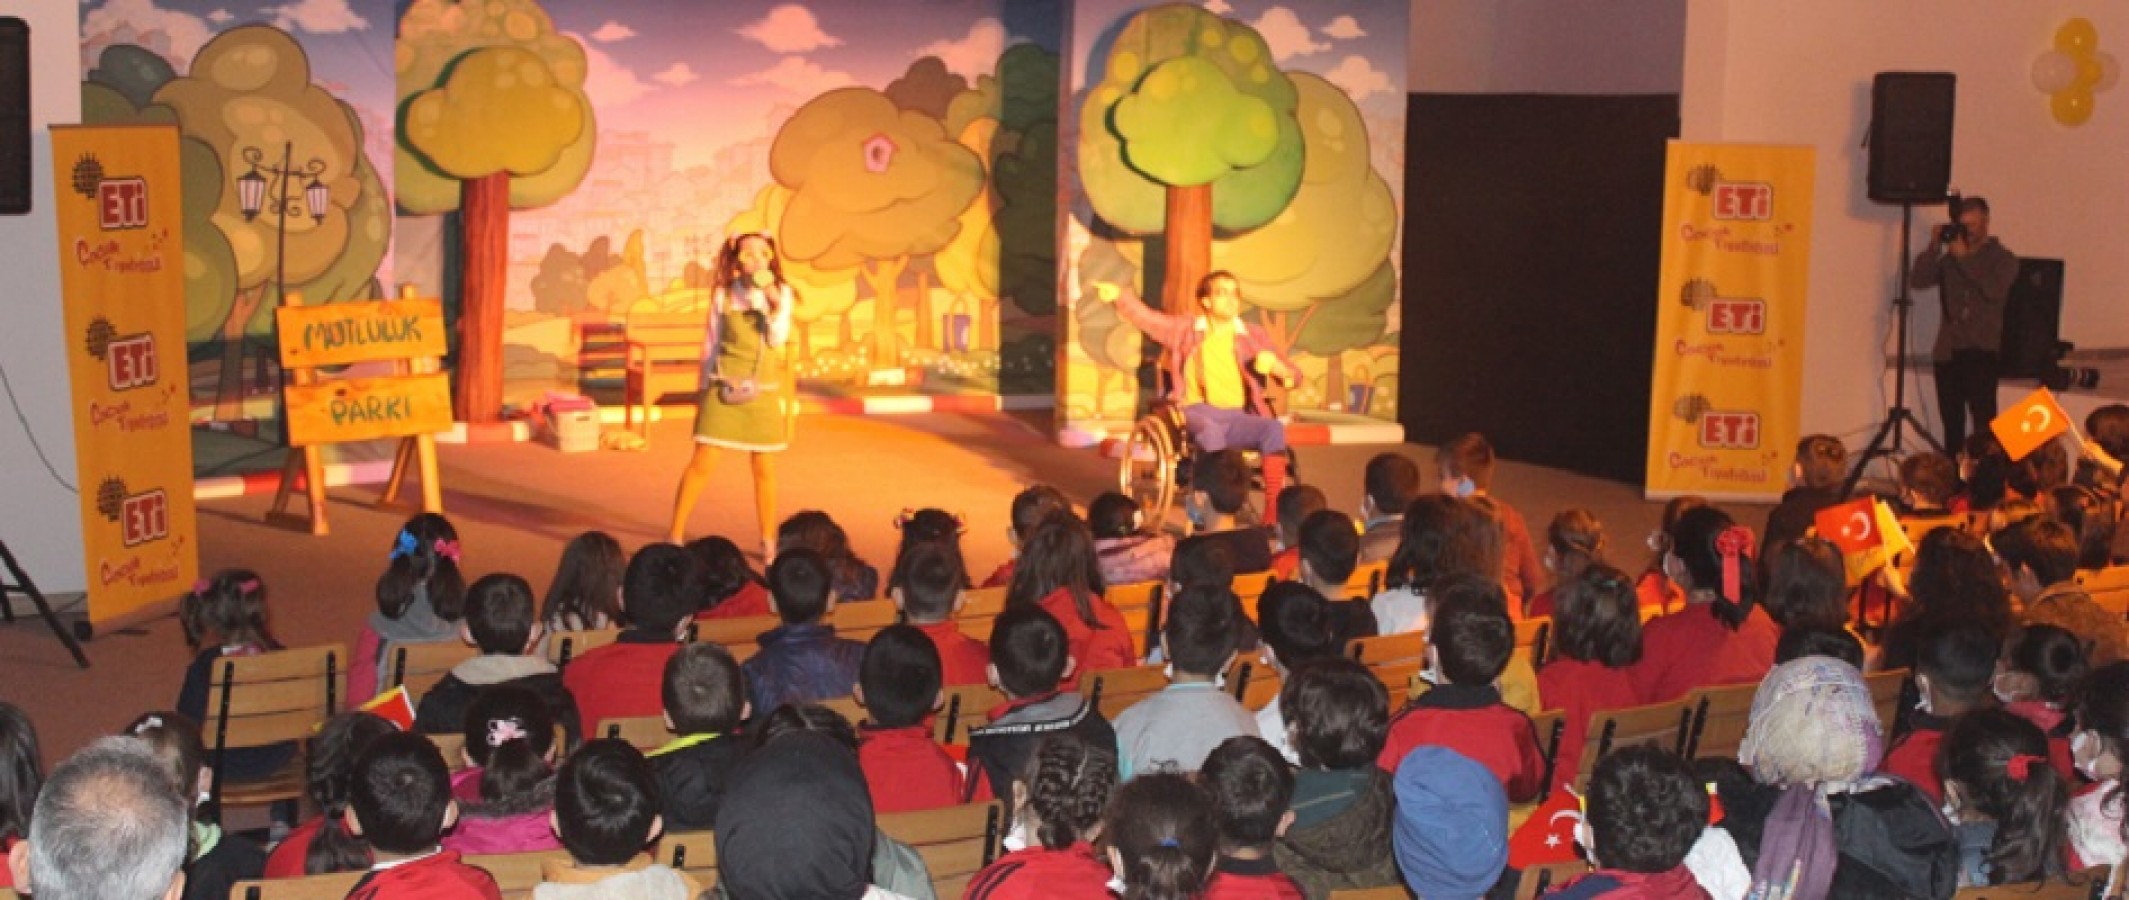 Selzede çocuklar tiyatro gösterisi ile eğlendi;